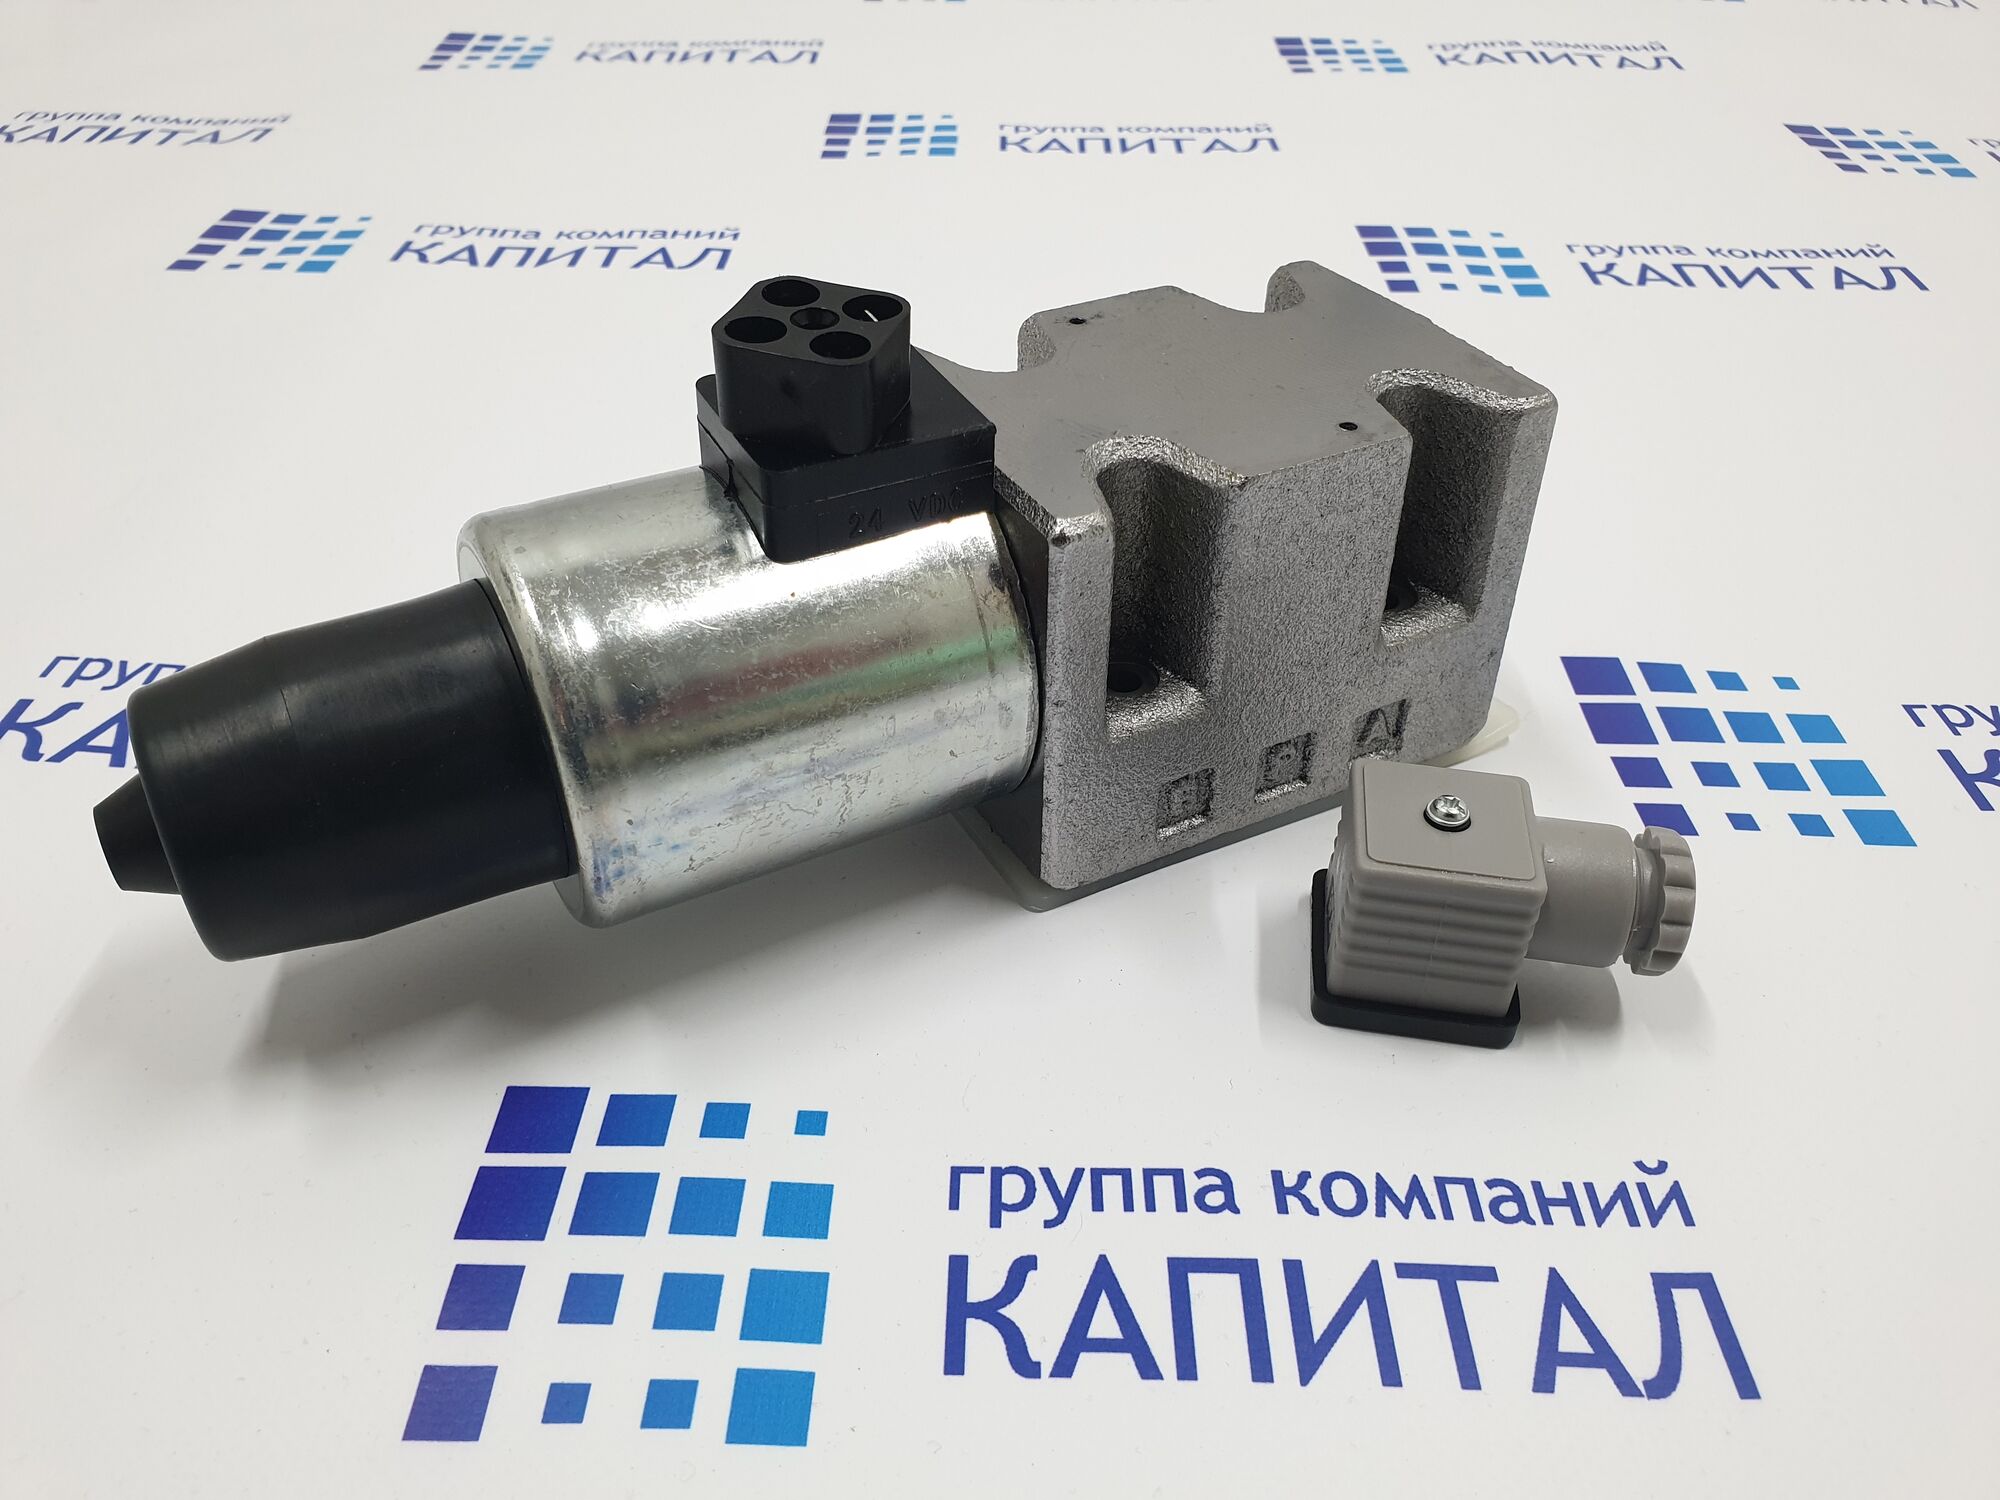 Электроклапан 4/2-way valve NG10 320bar